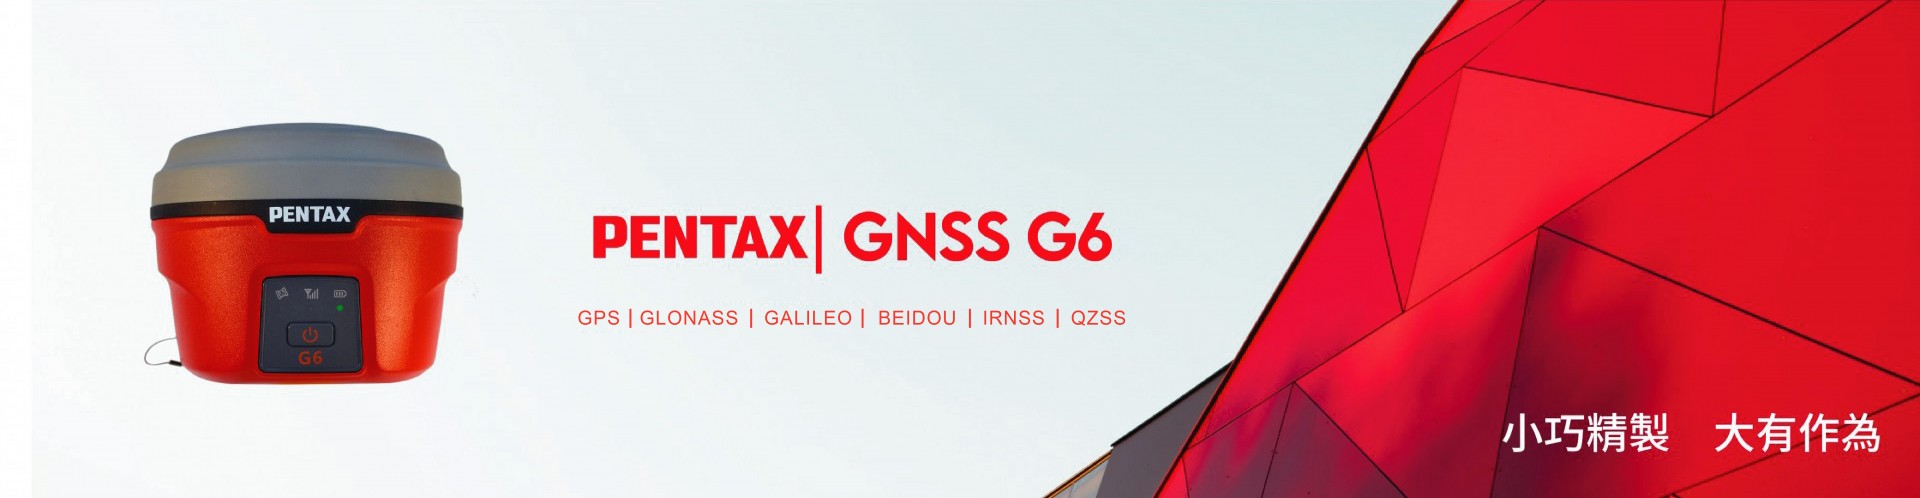 Pentax G6